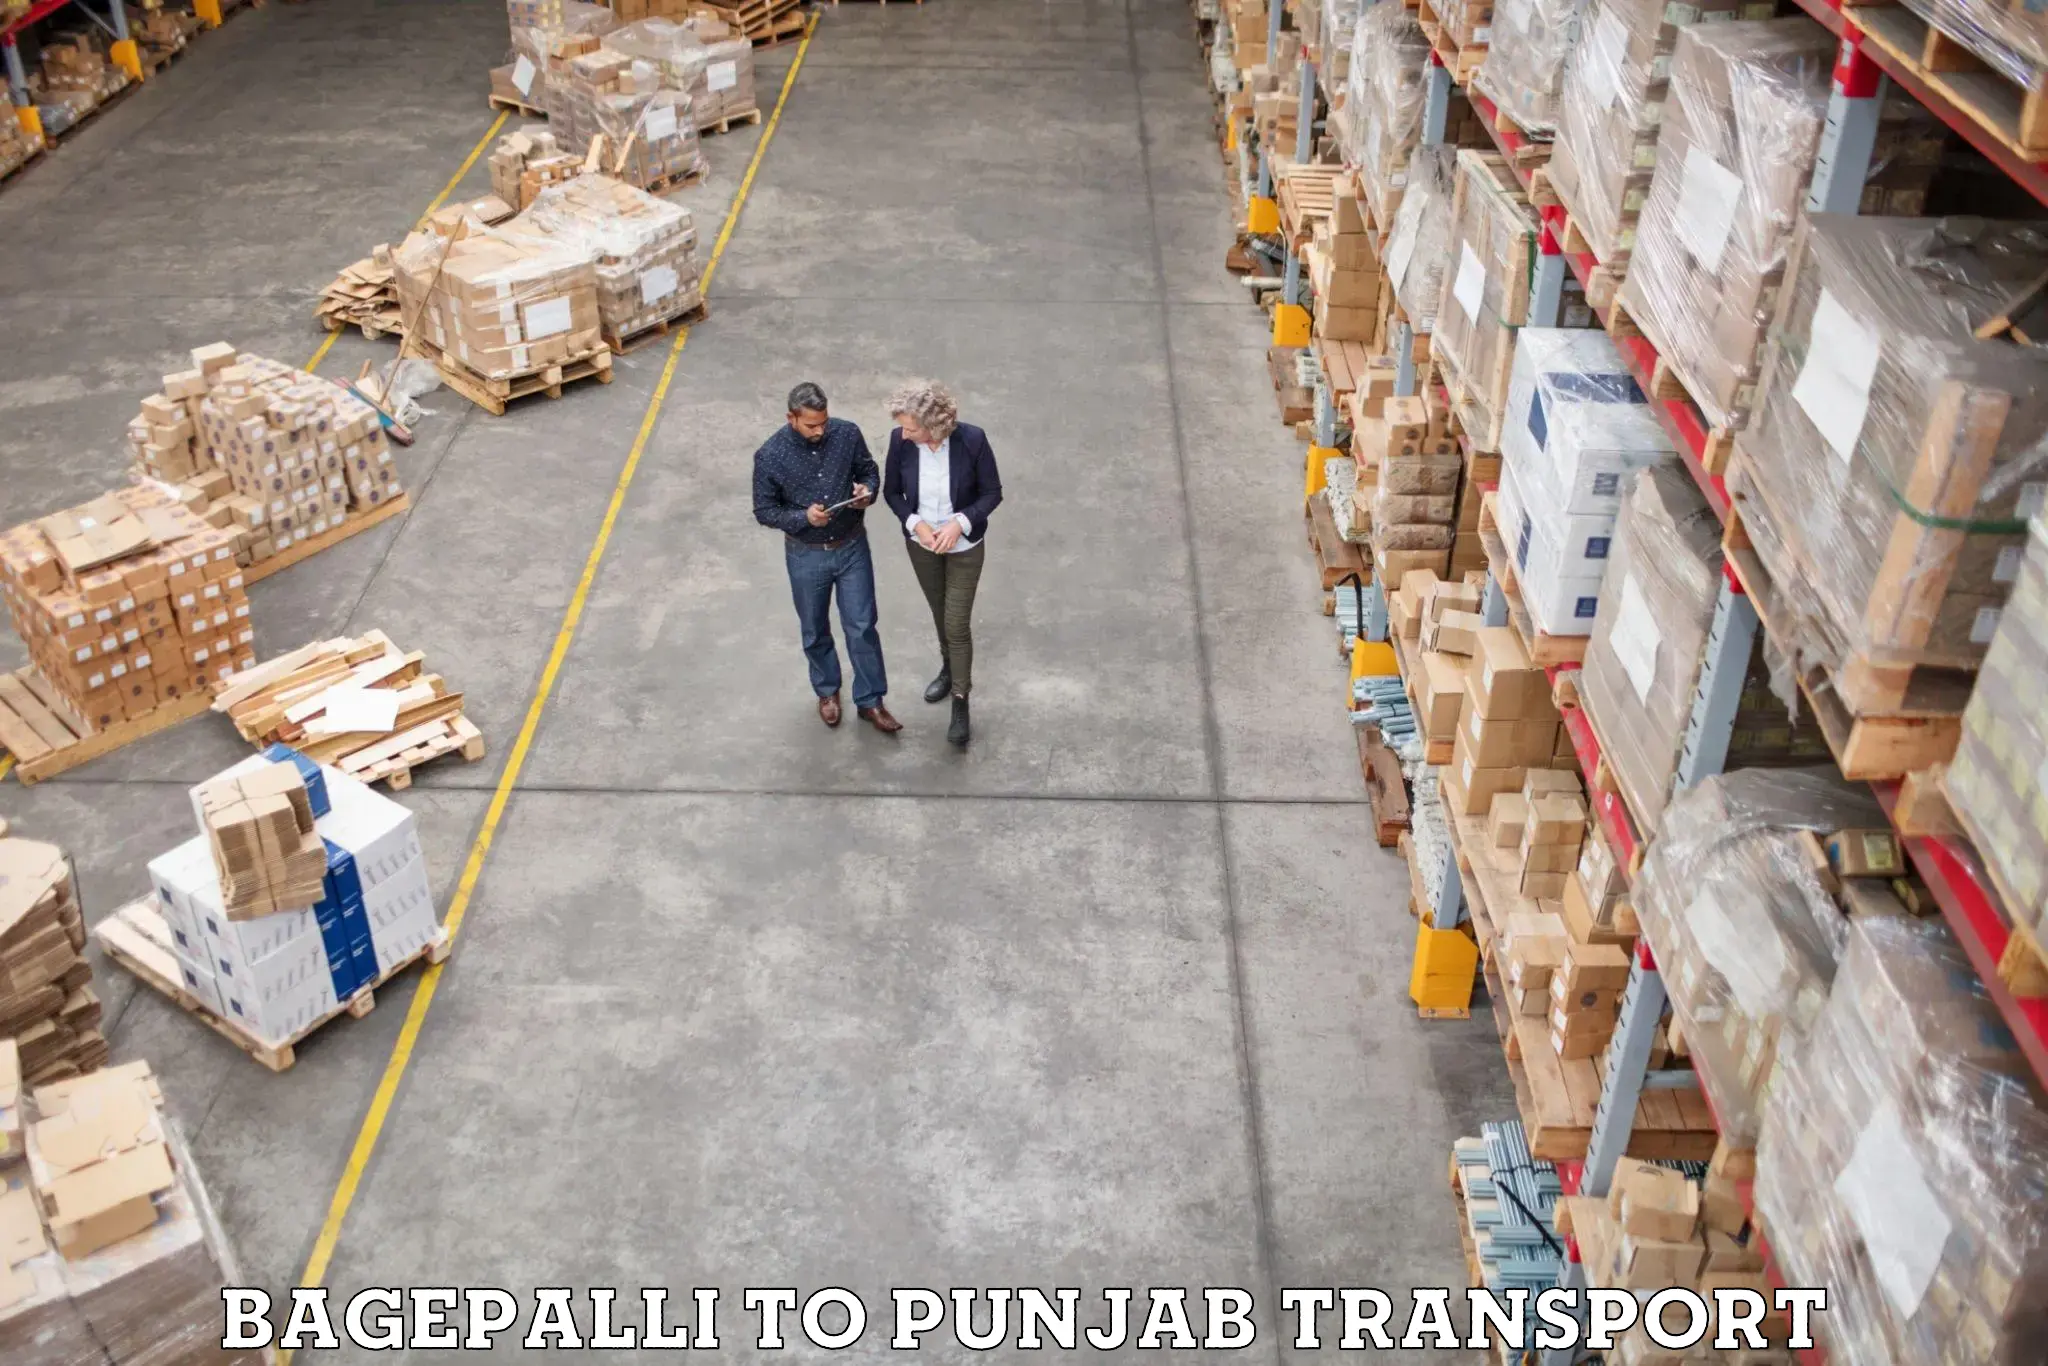 Two wheeler parcel service Bagepalli to Punjab